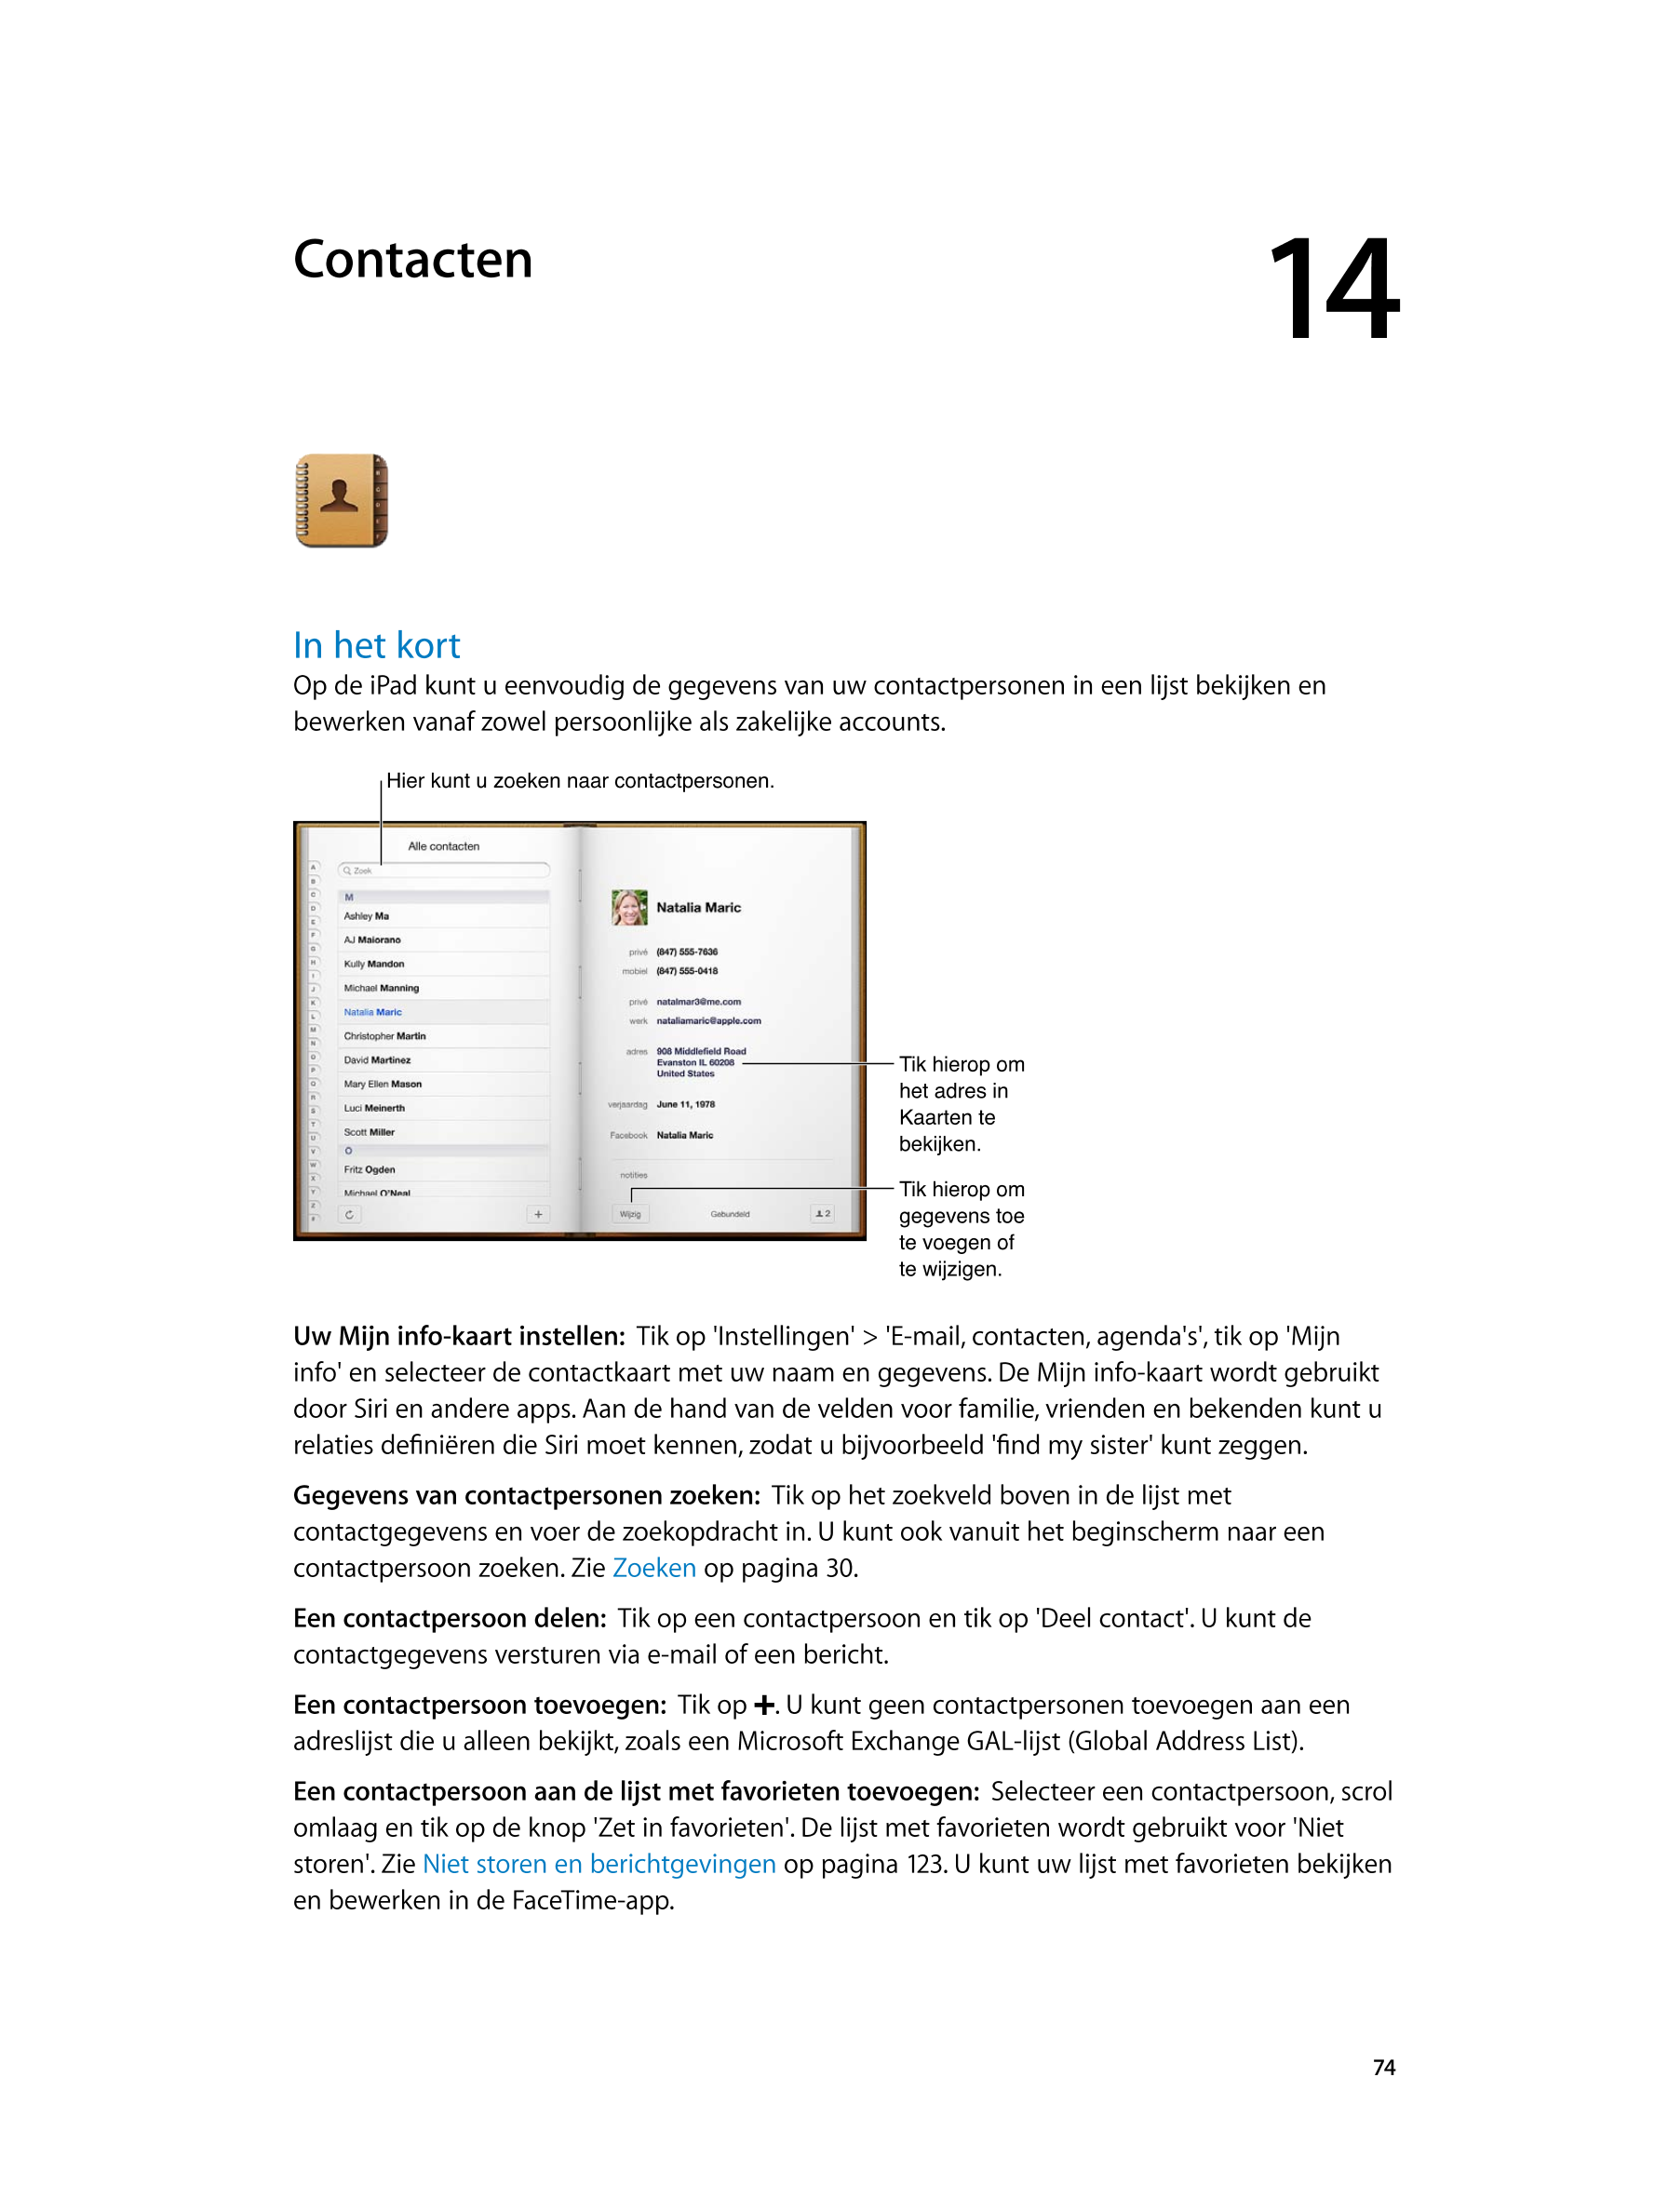   Contacten 14
In het kort
Op de iPad kunt u eenvoudig de gegevens van uw contactpersonen in een lijst bekijken en 
bewerken van